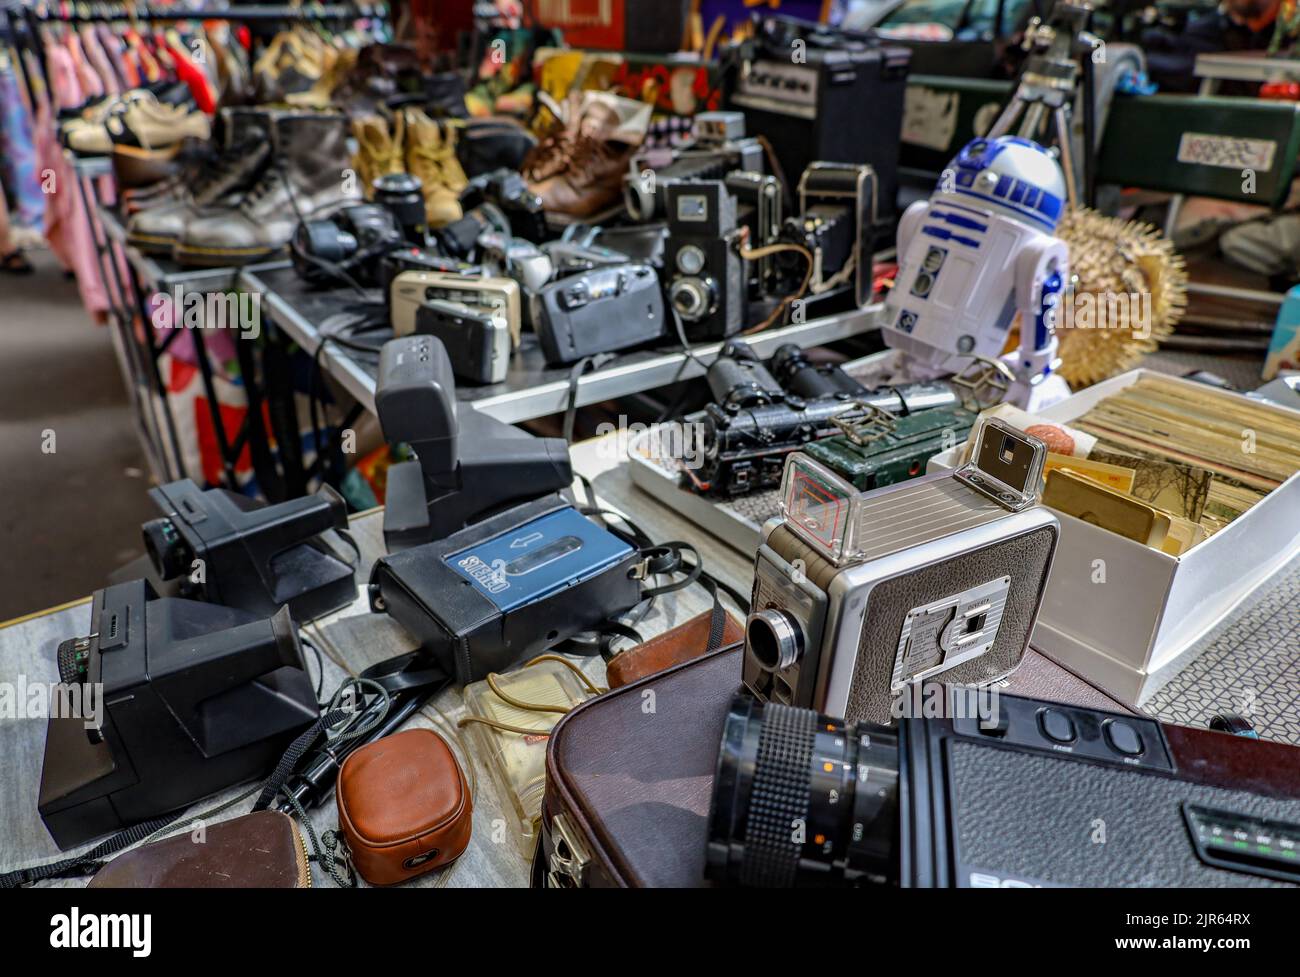 Un tas d'anciens appareils photo d'époque exposés sur une table à un marché aux puces de Paris, en France Banque D'Images